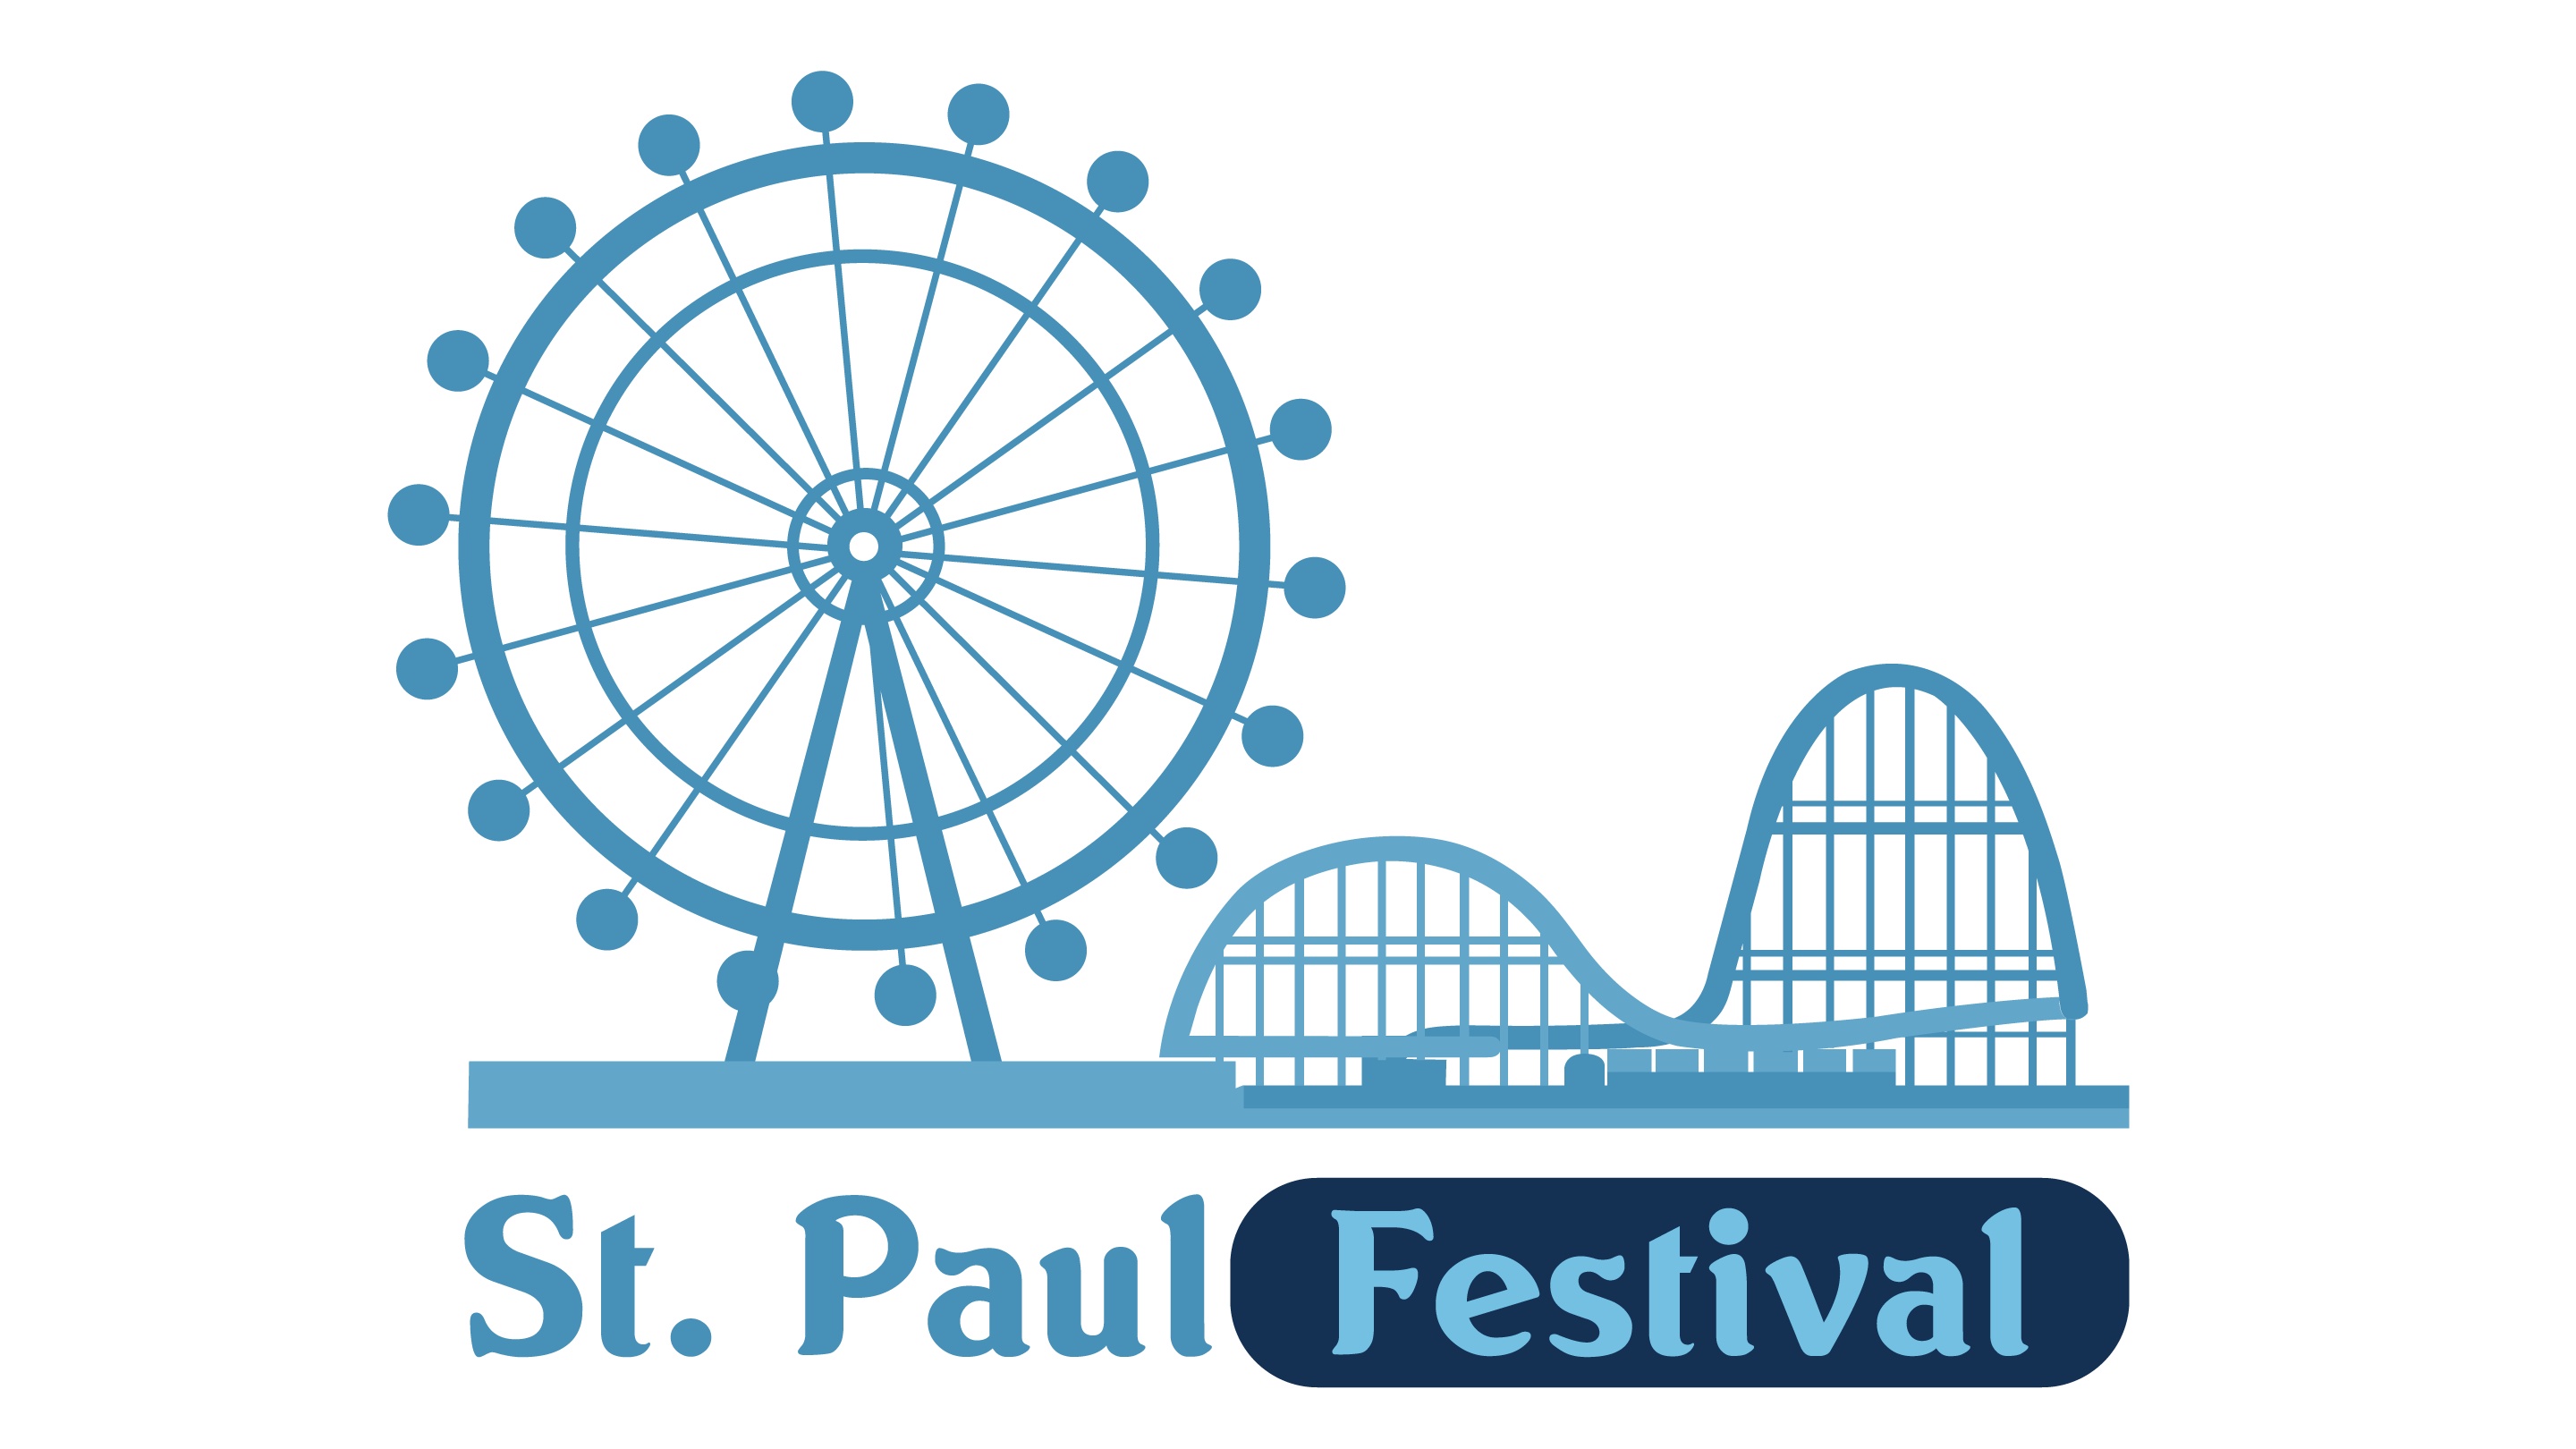 St. Paul Festival SponsorMyEvent